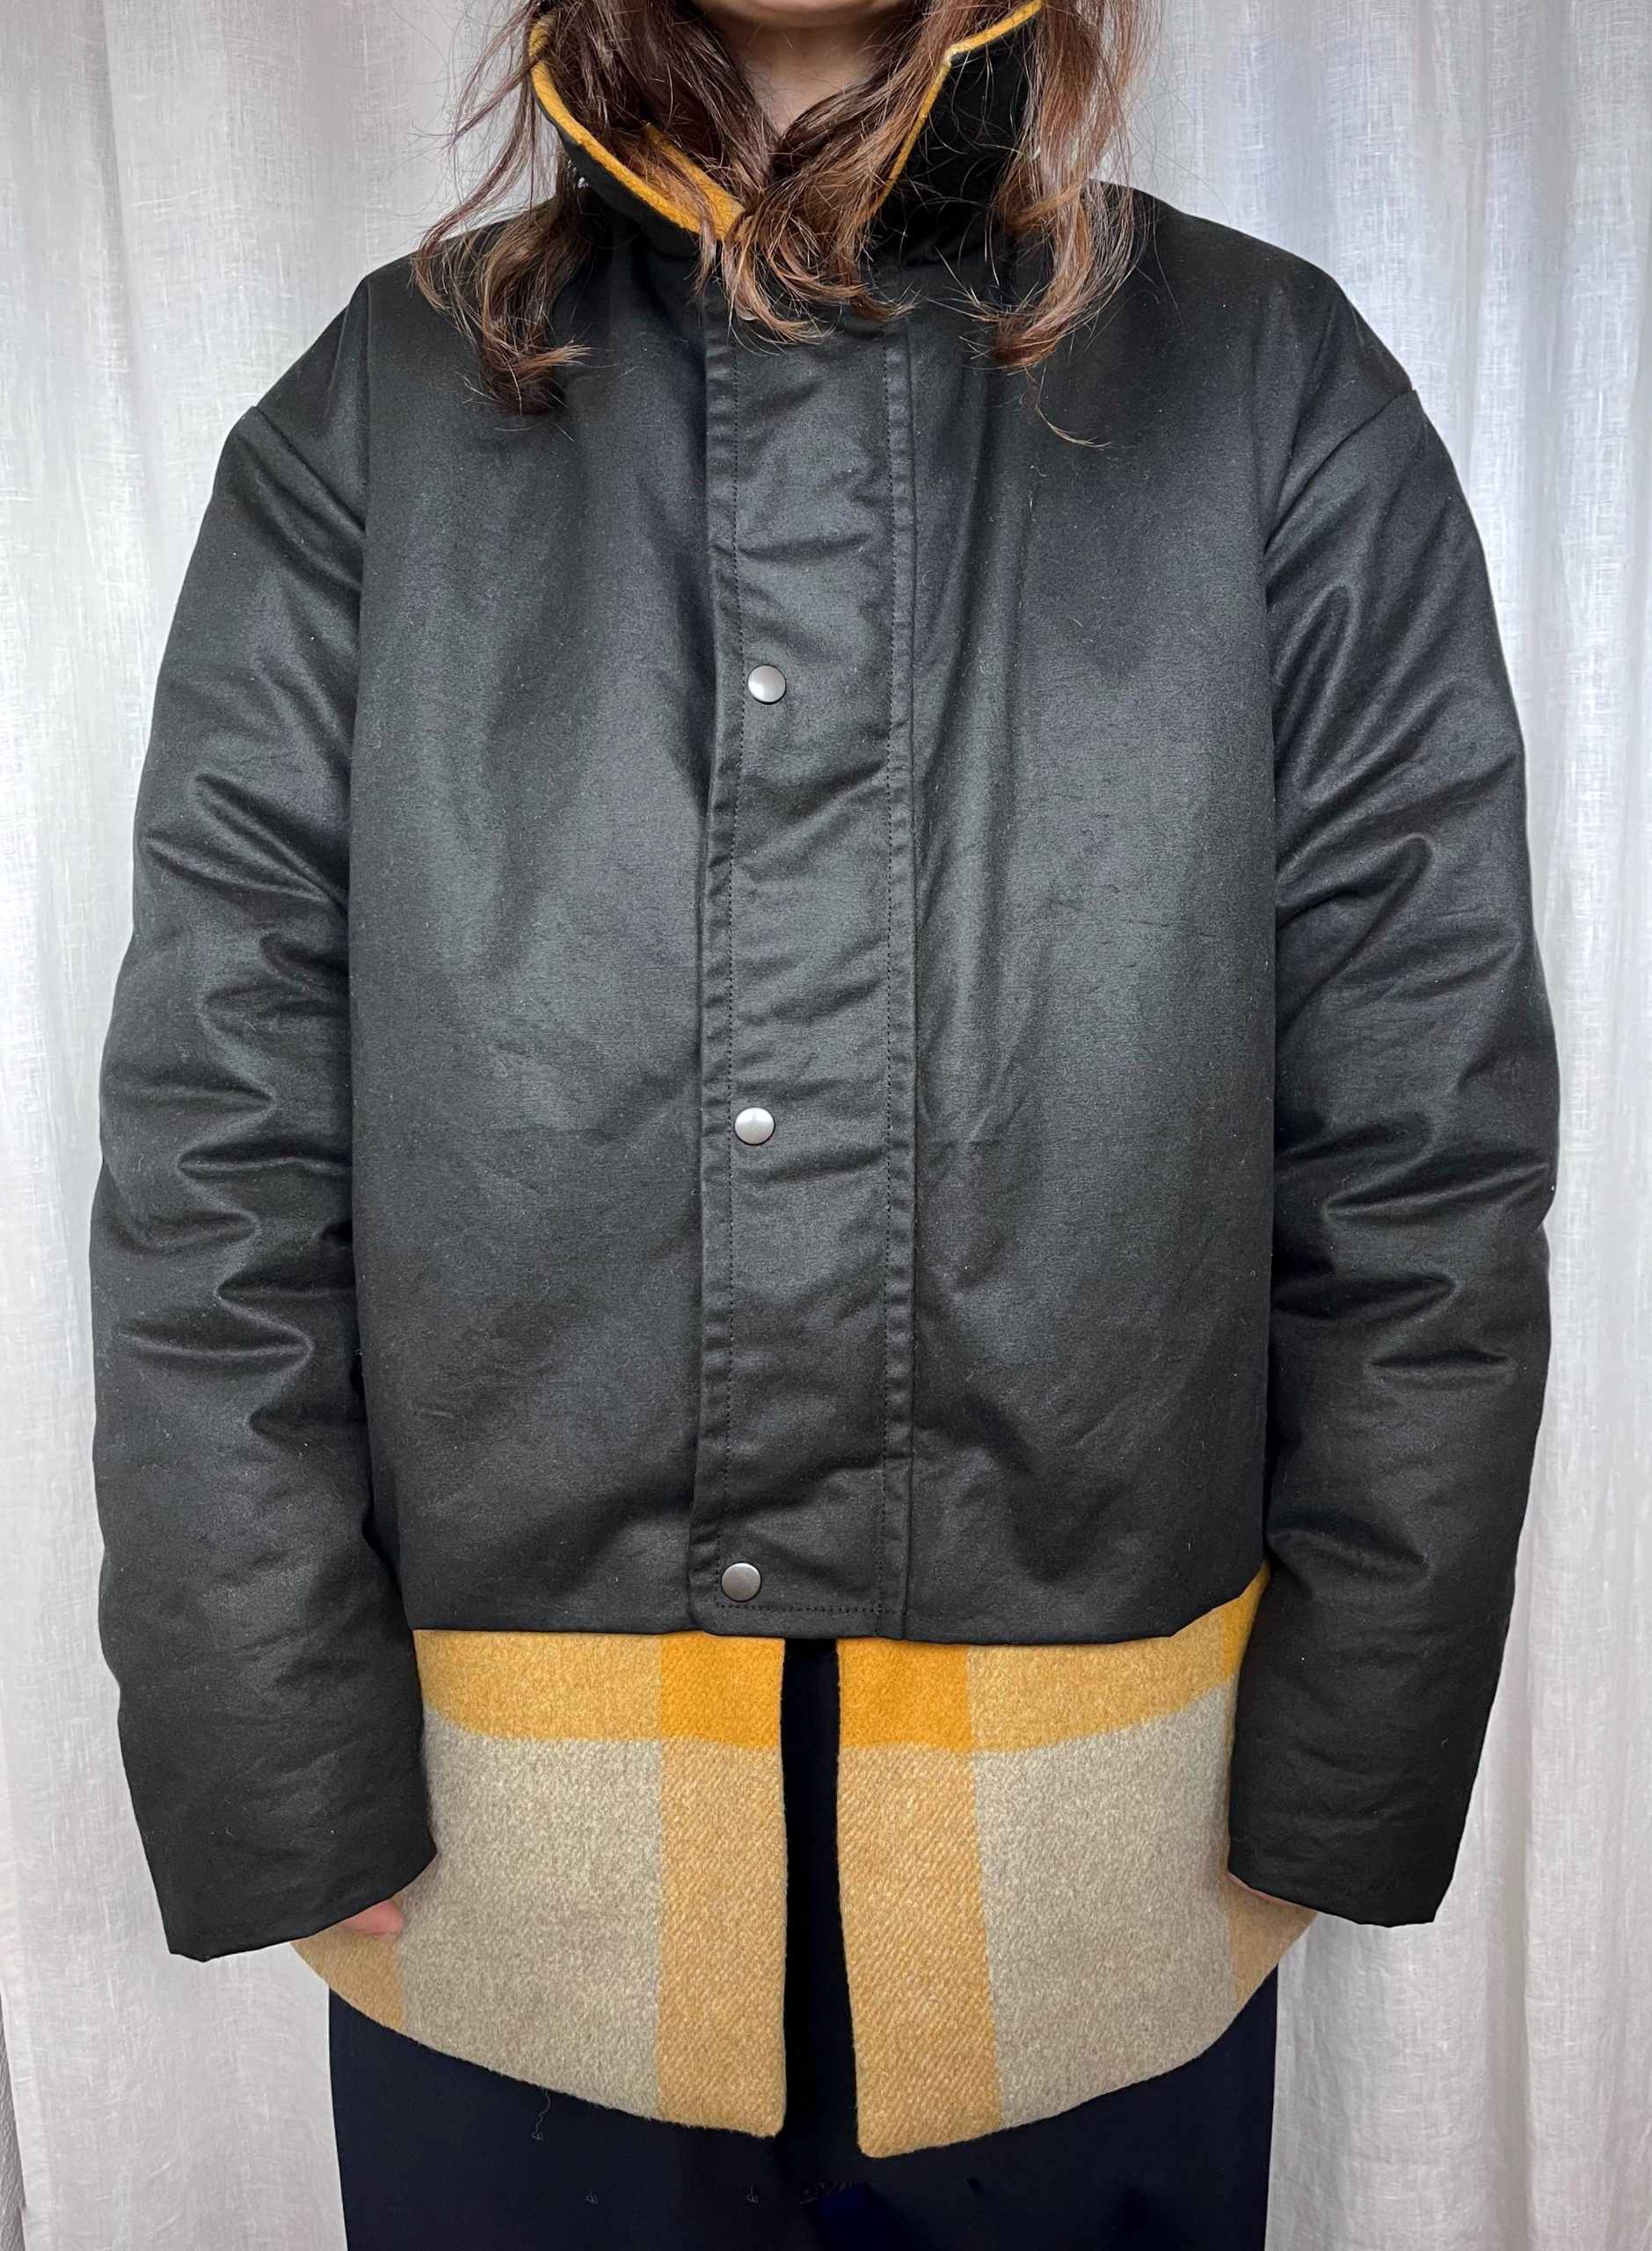 Abrigo Unisex con doble capa. Una impermeable negra y una inferior en lana de cuadros mostaza